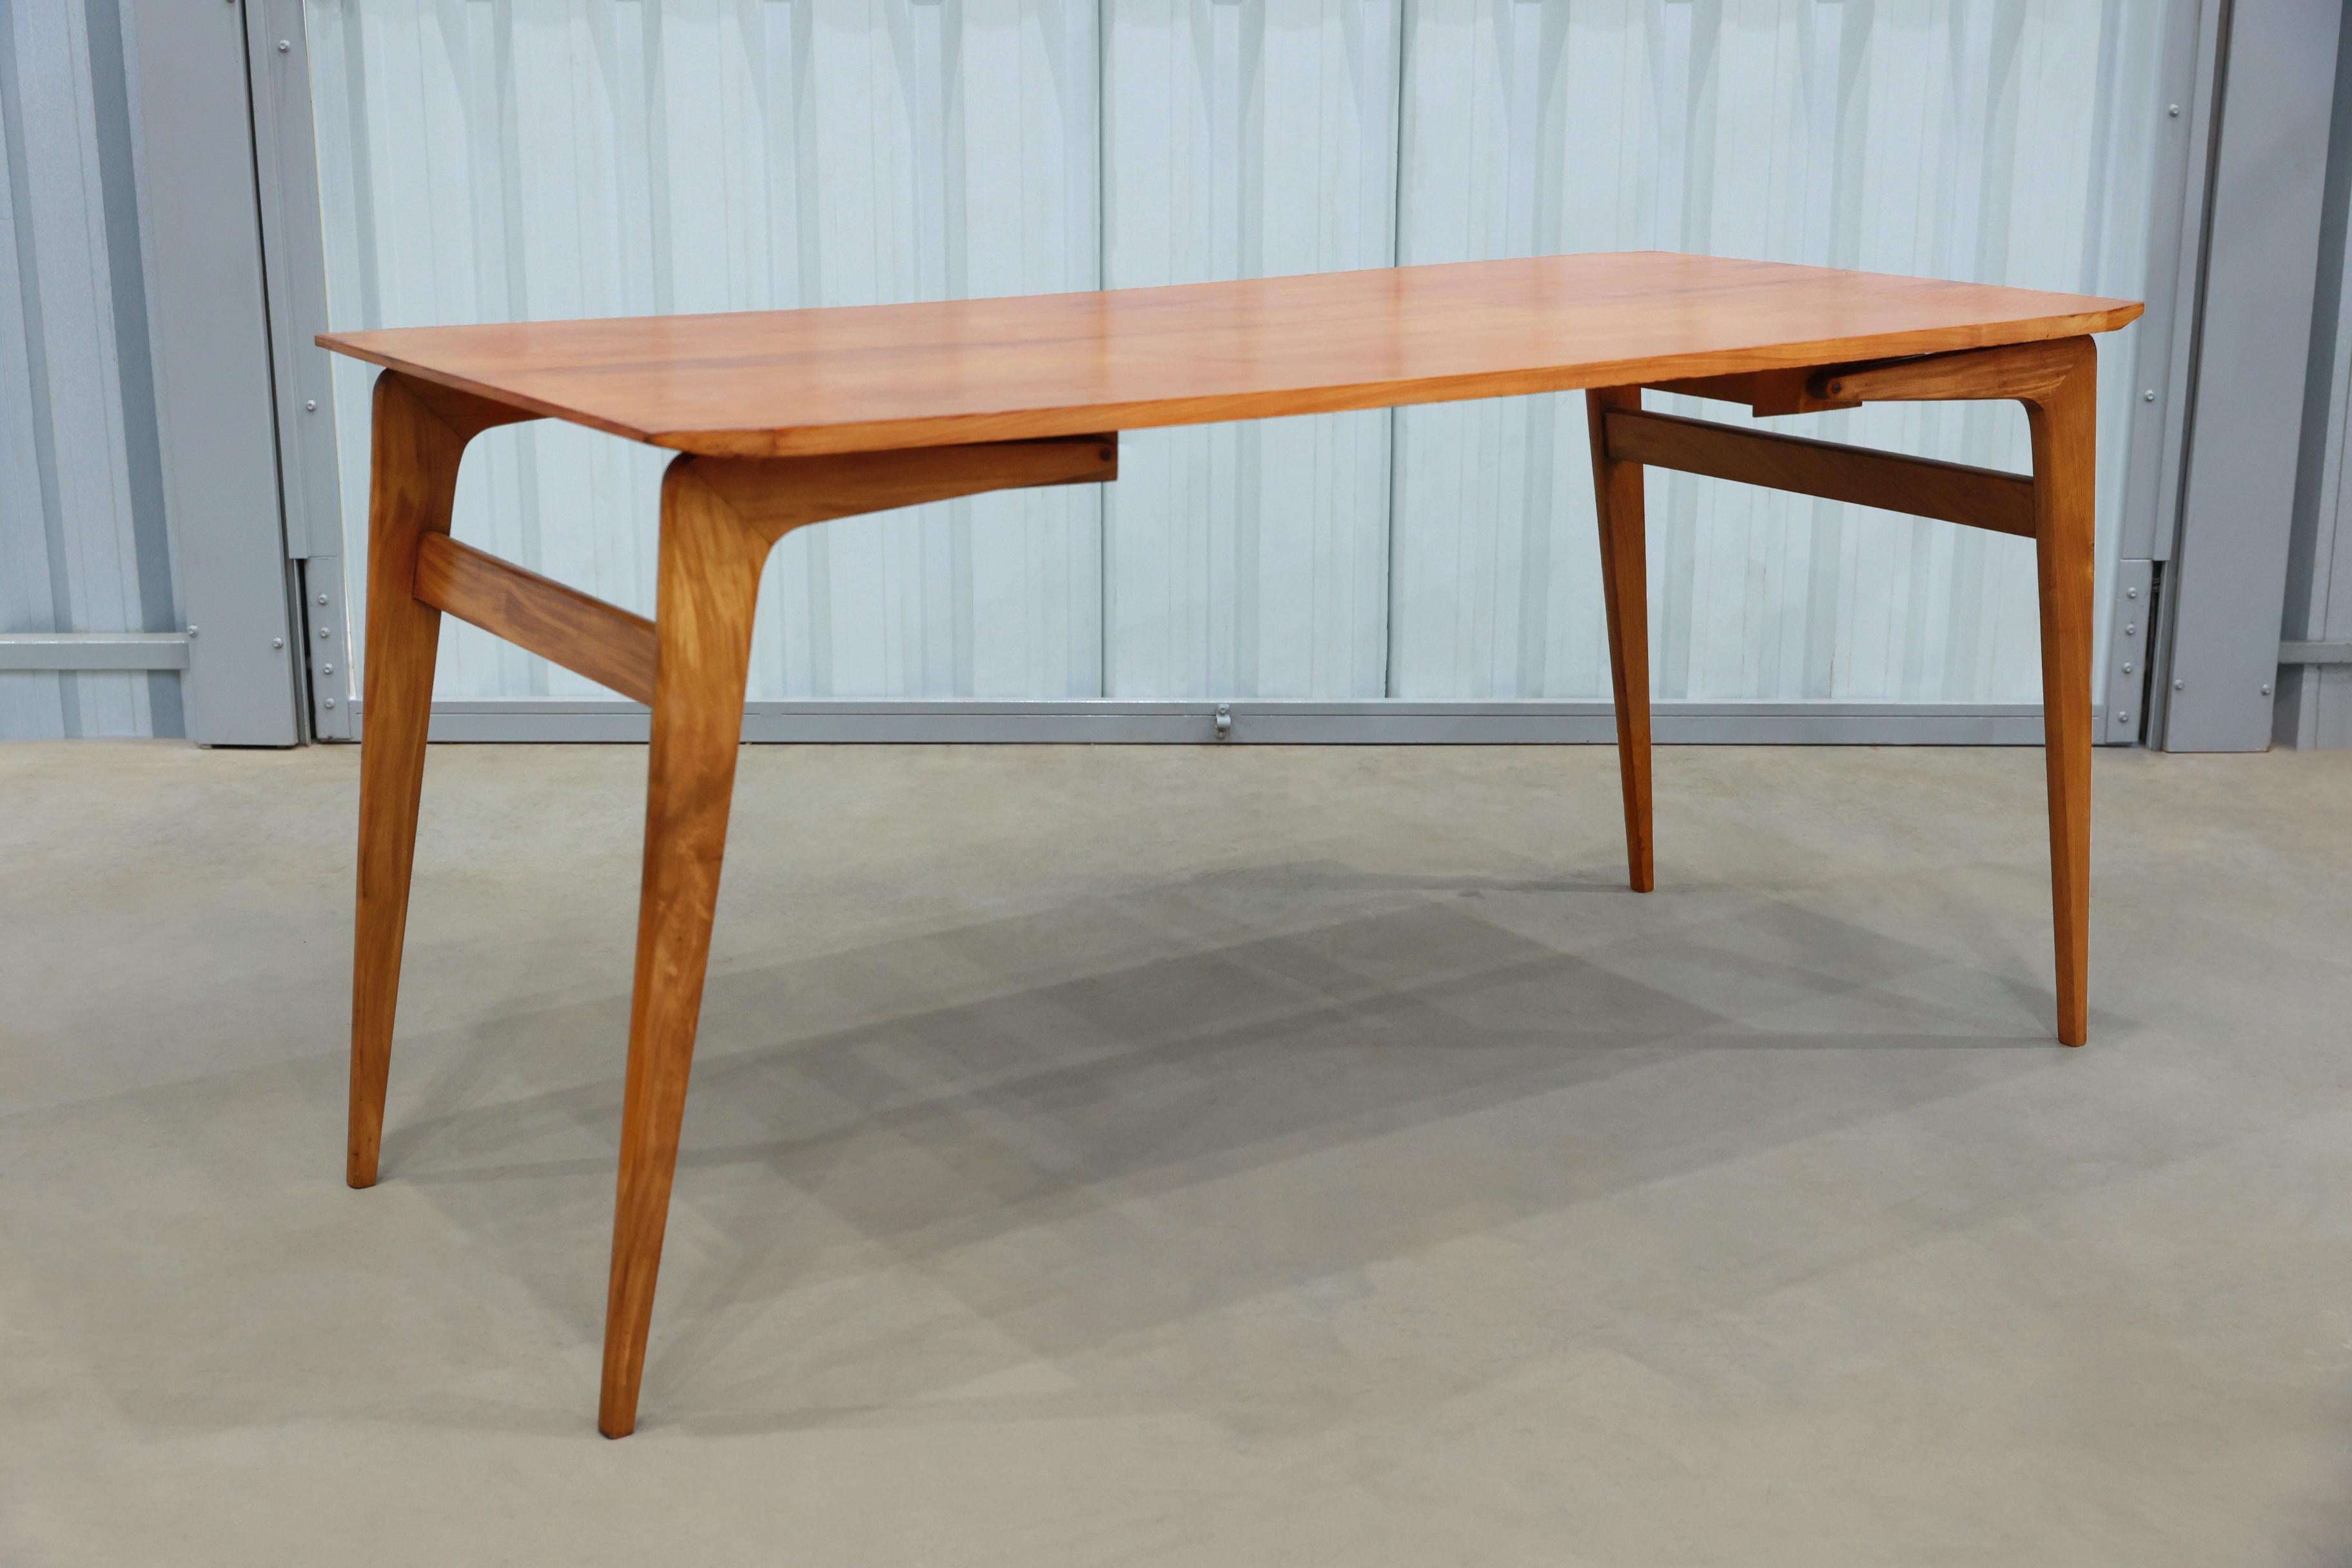 20ième siècle Table de salle à manger et table basse pliable moderne brésilienne en bois dur, Carlo Hauner Brésil